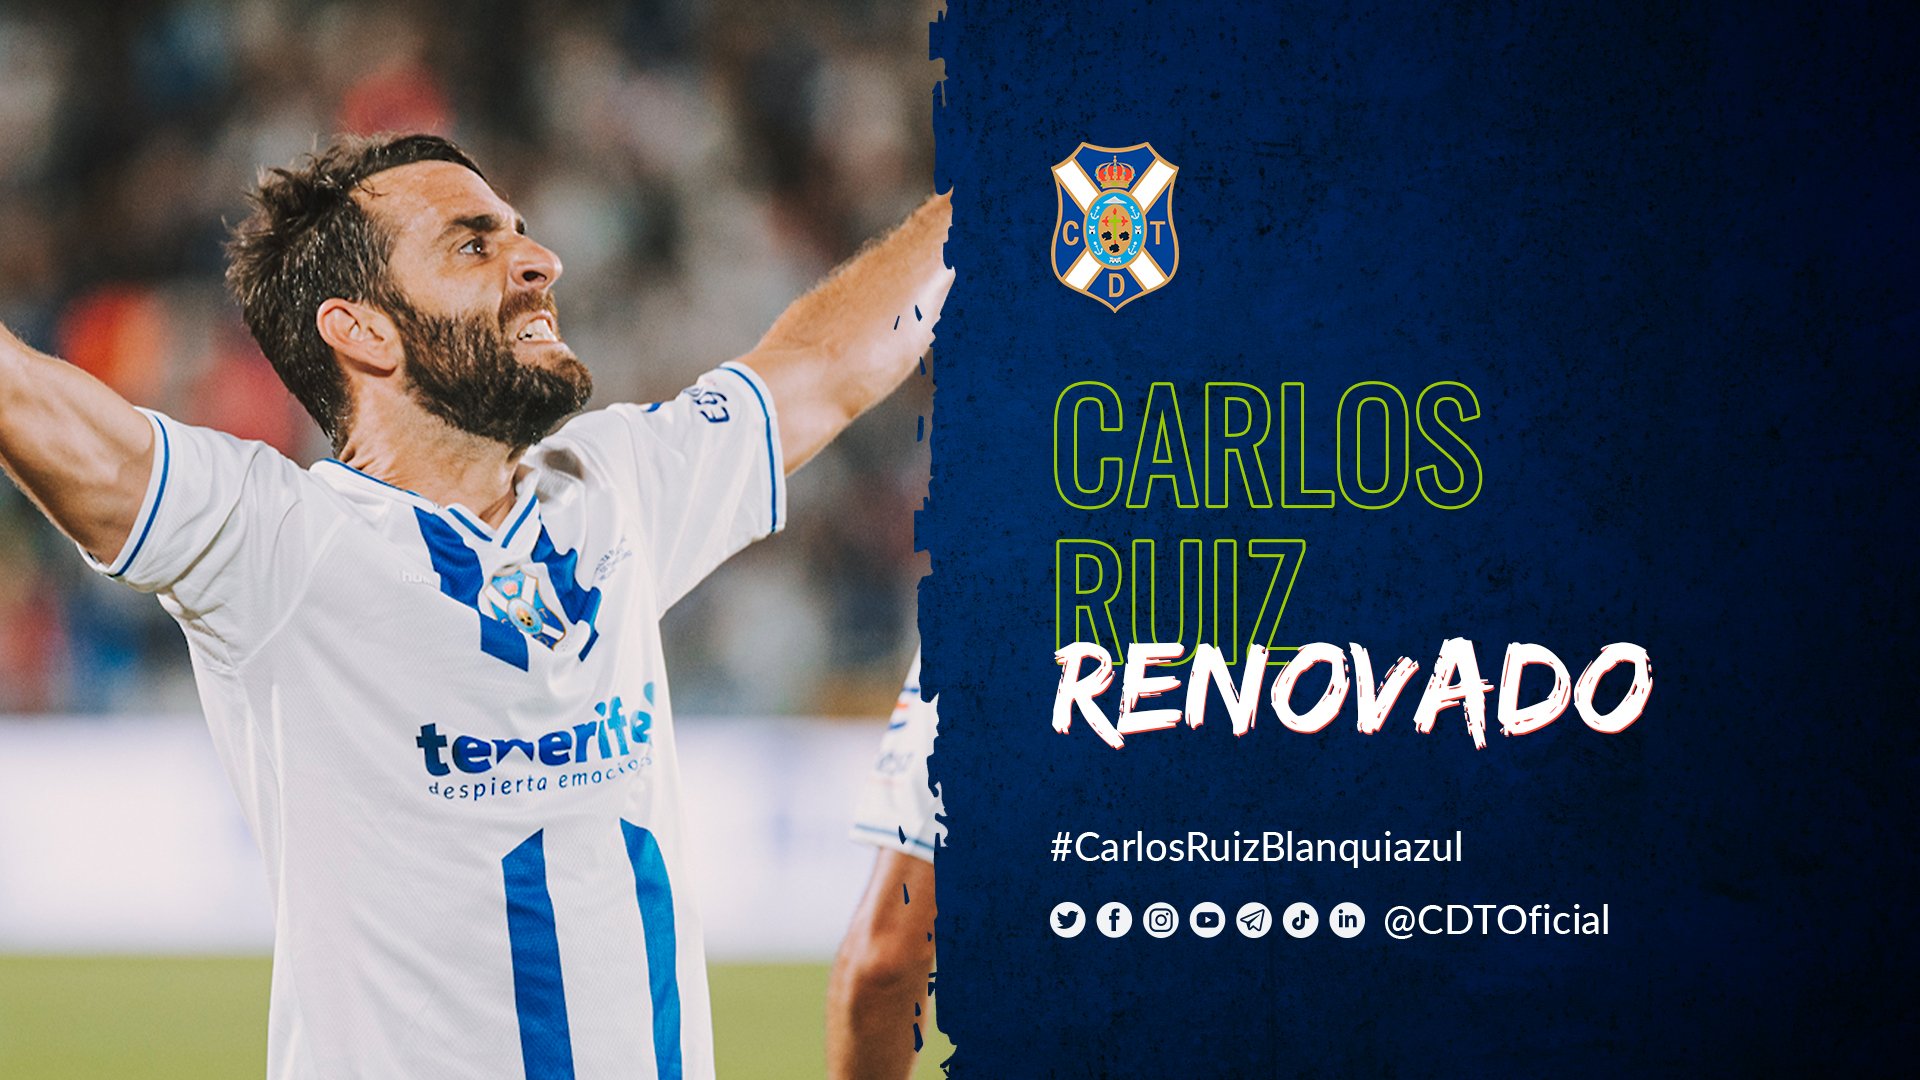 Carlos Ruiz, renovado por un año más, cumplirá su 10ª temporada como blanquiazul